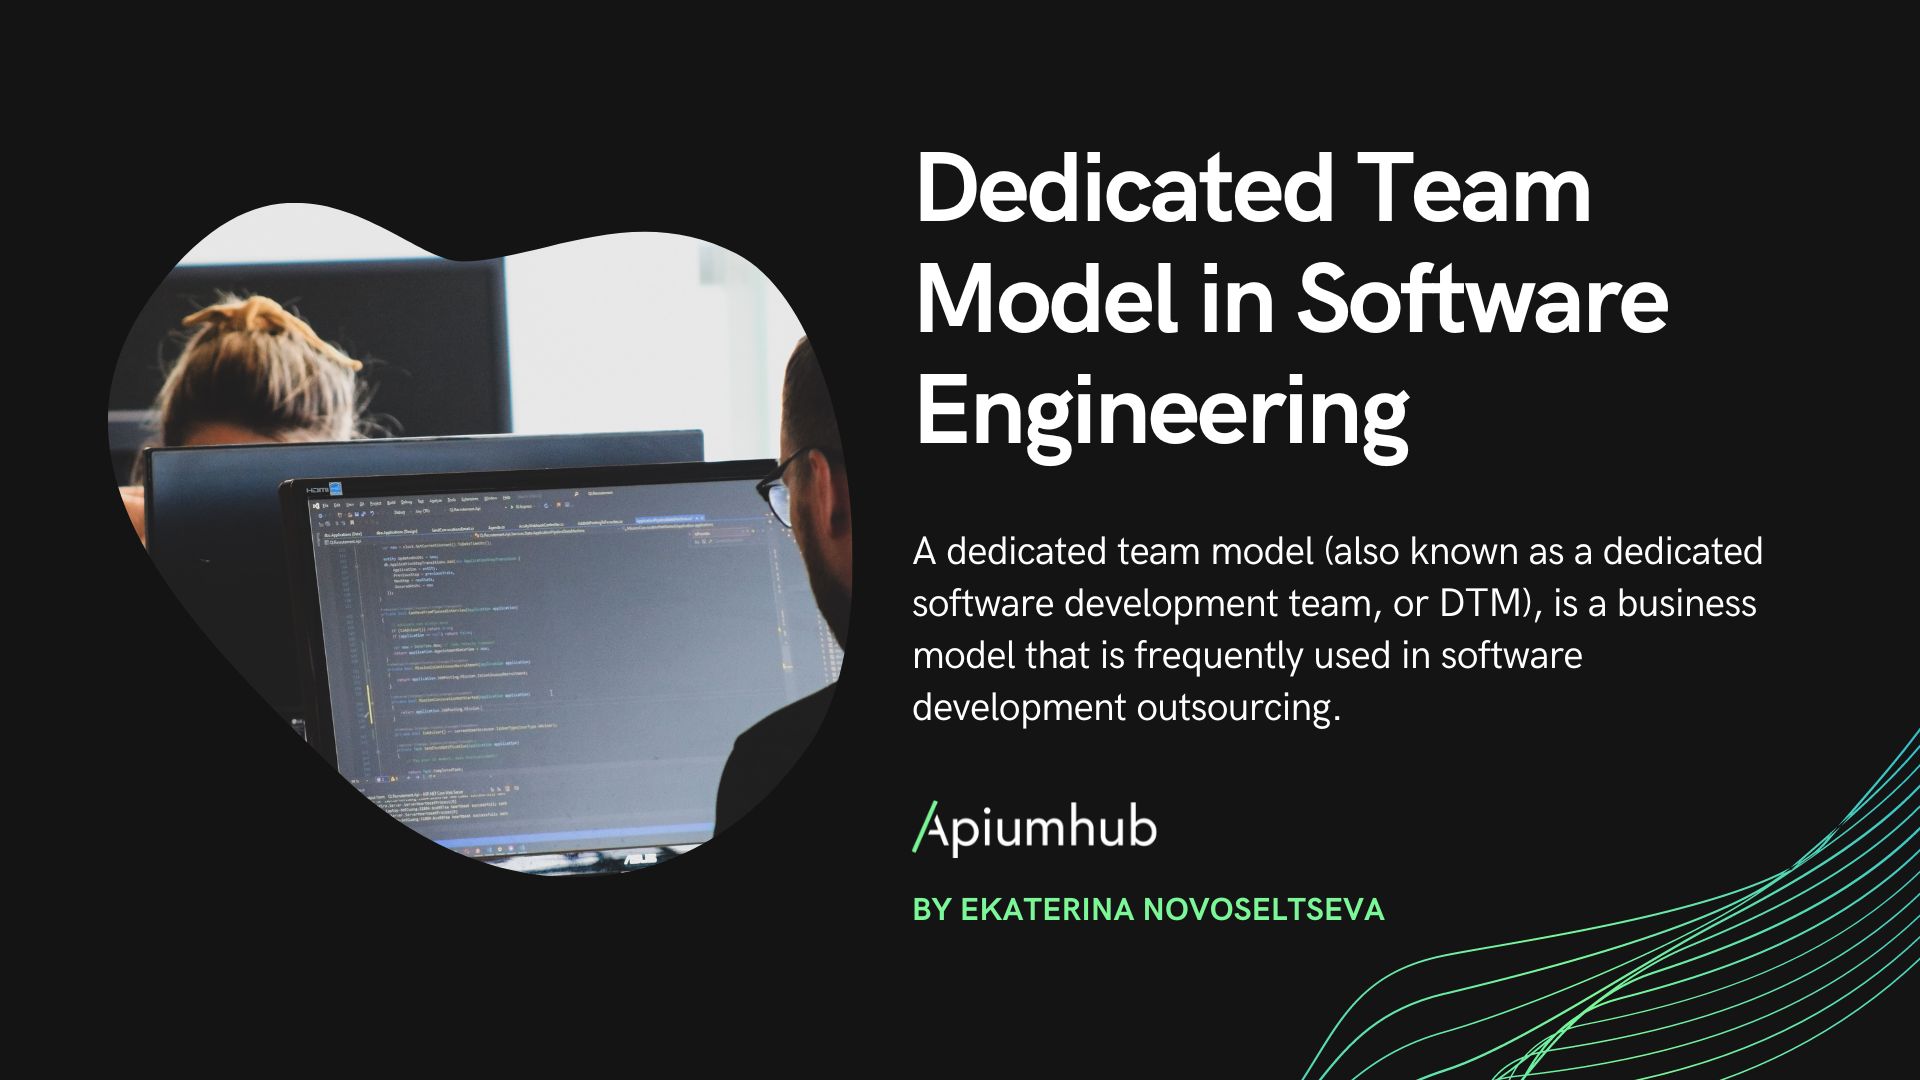 Dedicated team model in software engineering